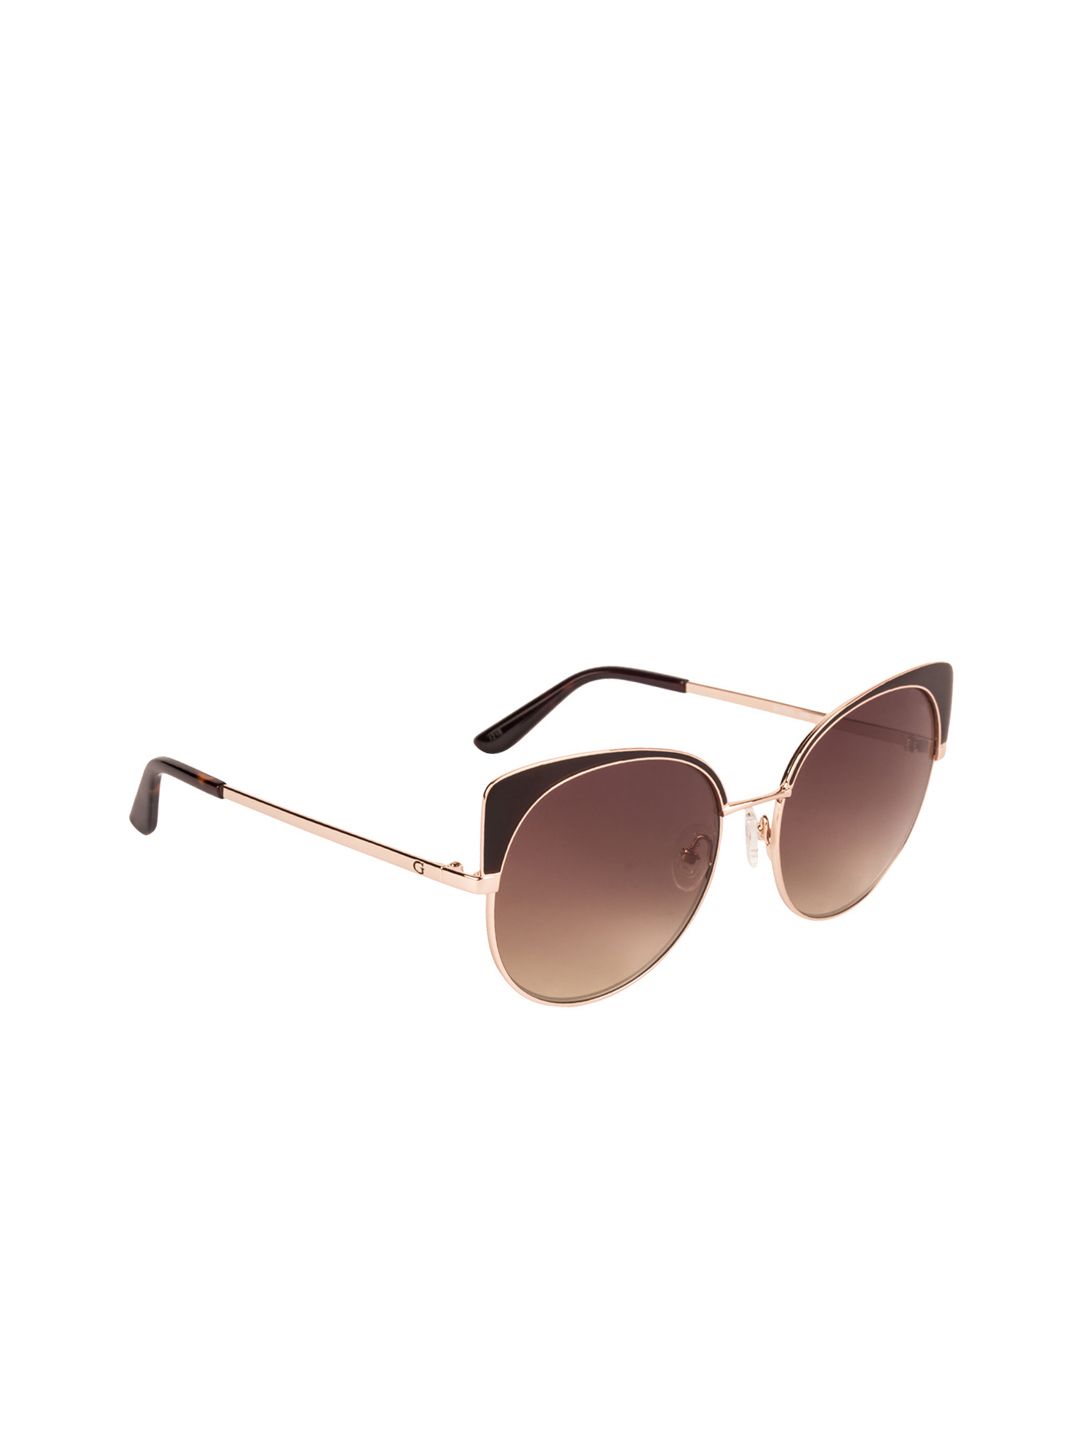 GUESS Women Brown Cateye Sunglasses GU7599 56 50G Price in India